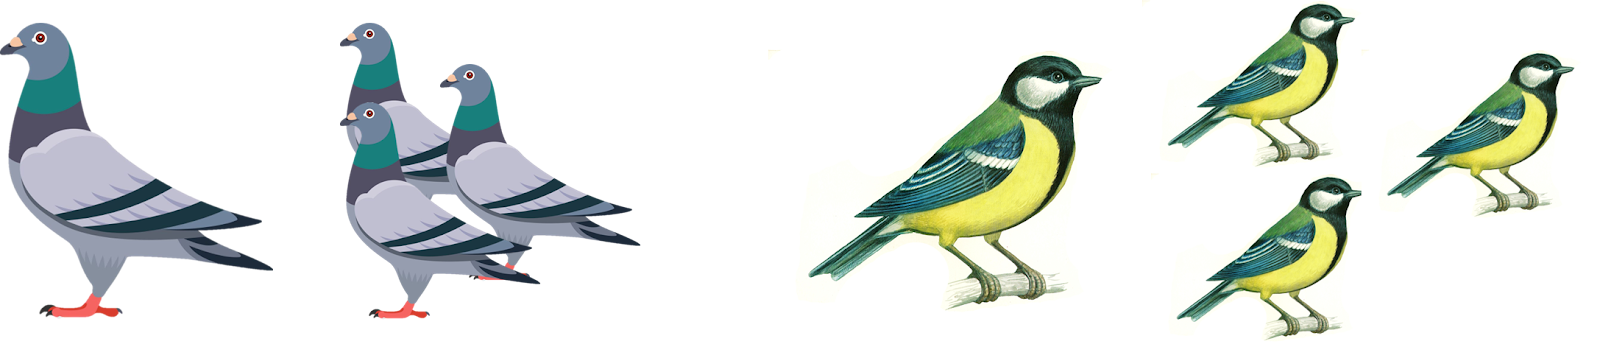 Изображение выглядит как птица, голубь

Автоматически созданное описание